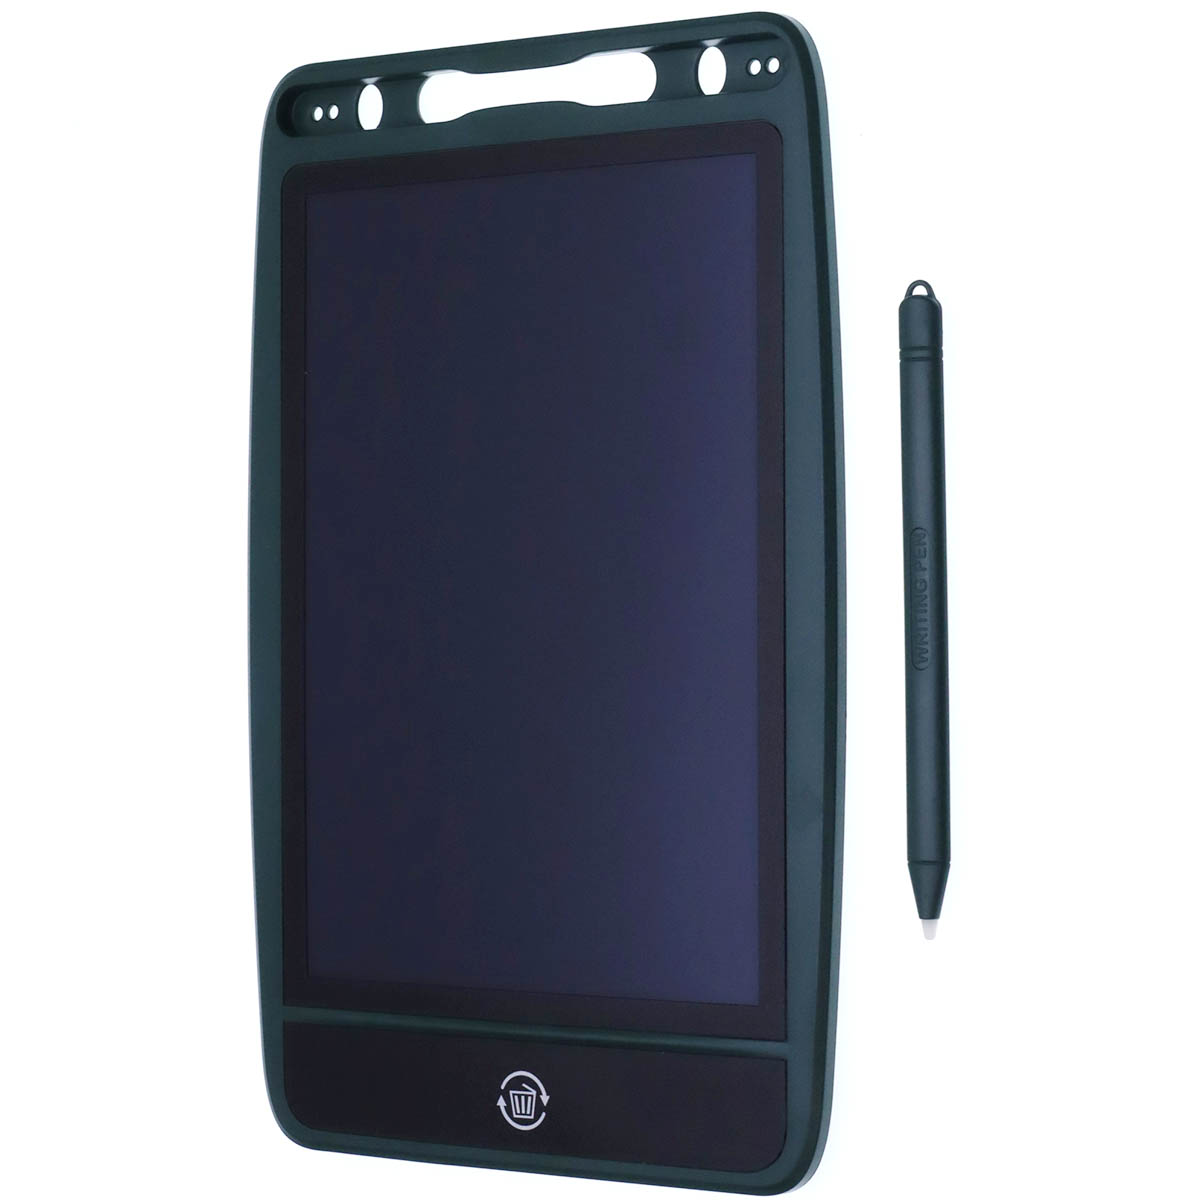 Графический планшет LCD WRITING BOARD с сенсорным дисплеем для рисования, 8.5 дюймов, цвет темно зеленый